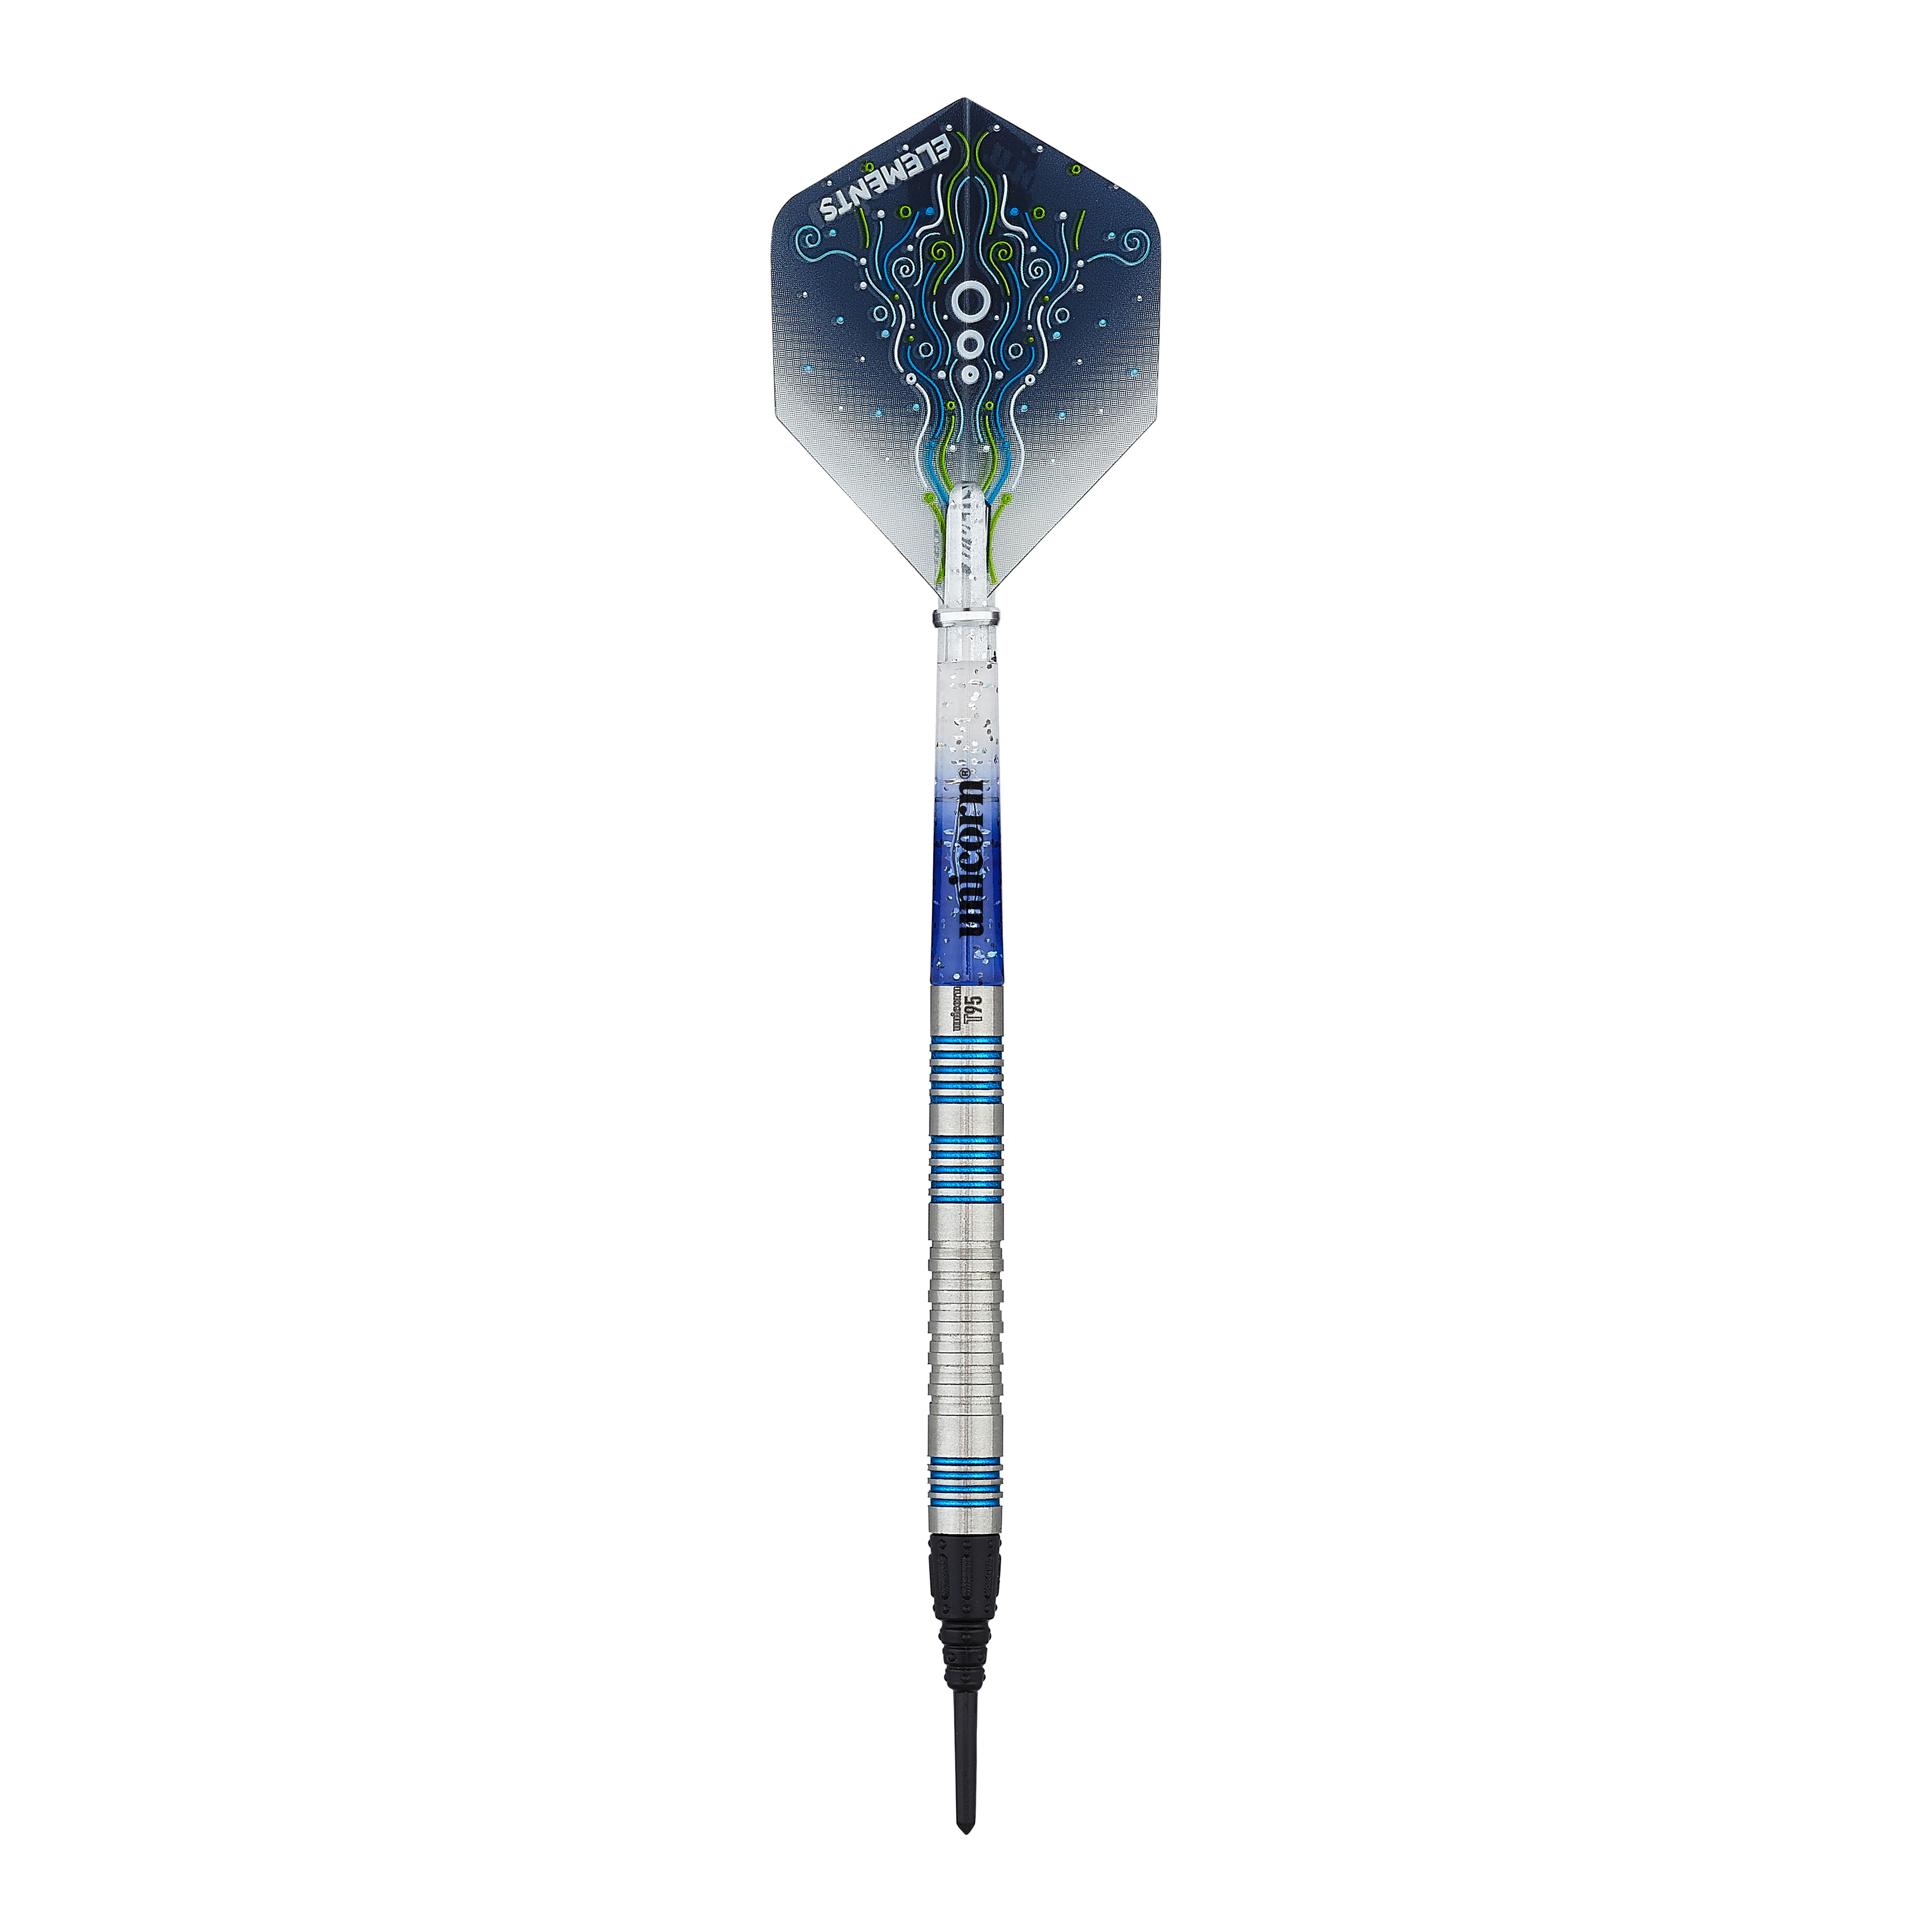 Unicorn T95 Core XL Blauwe zachte darts